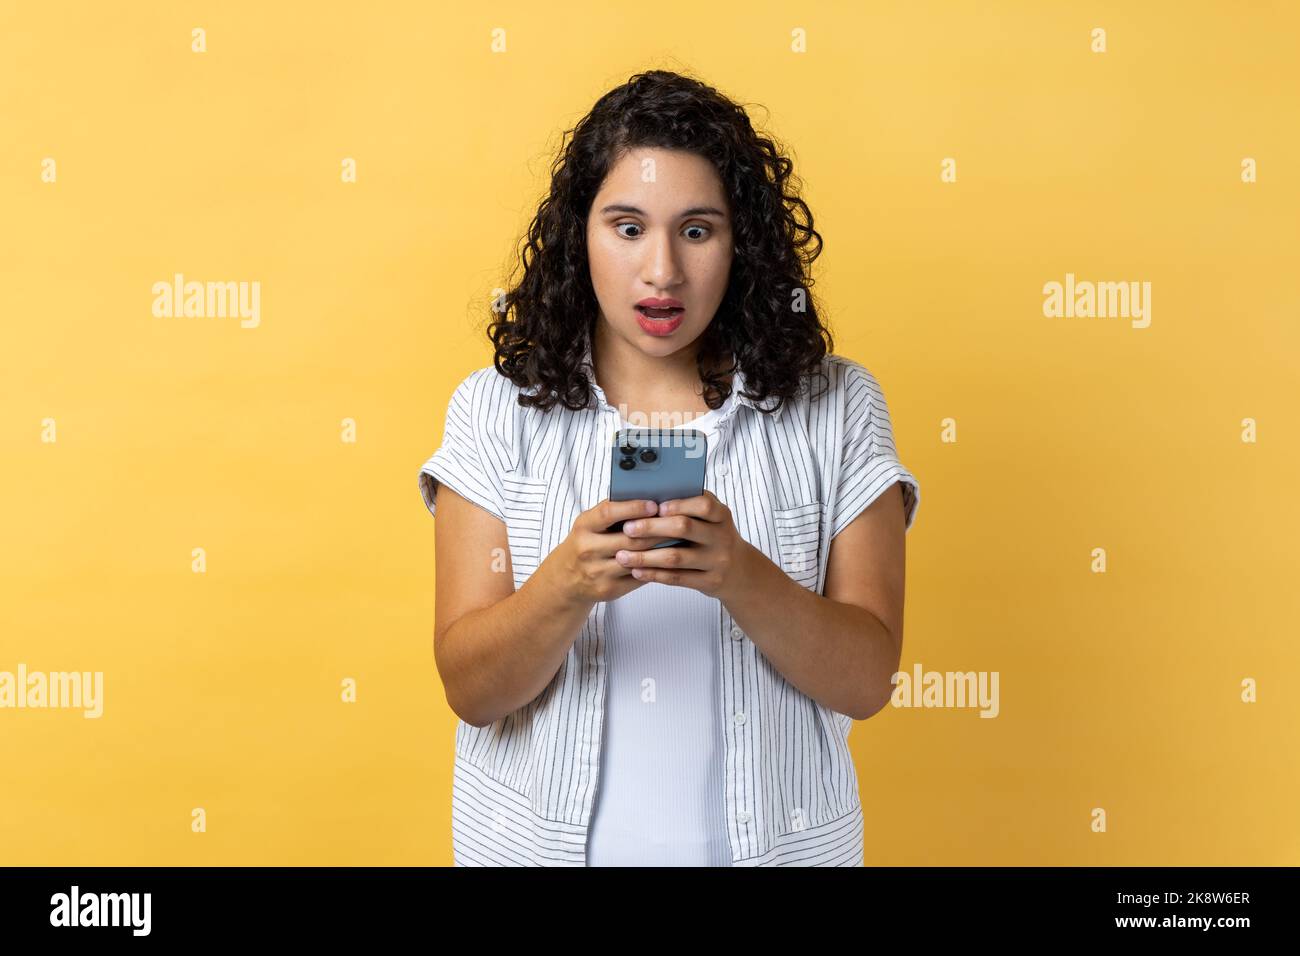 Porträt einer schockierten, staunenden Frau mit dunklem, welligen Haar, die Mobiltelefon benutzt und schockierende Nachrichten in sozialen Nachrichten liest und mit großen Augen auf den Bildschirm blickt. Innenaufnahme des Studios isoliert auf gelbem Hintergrund. Stockfoto